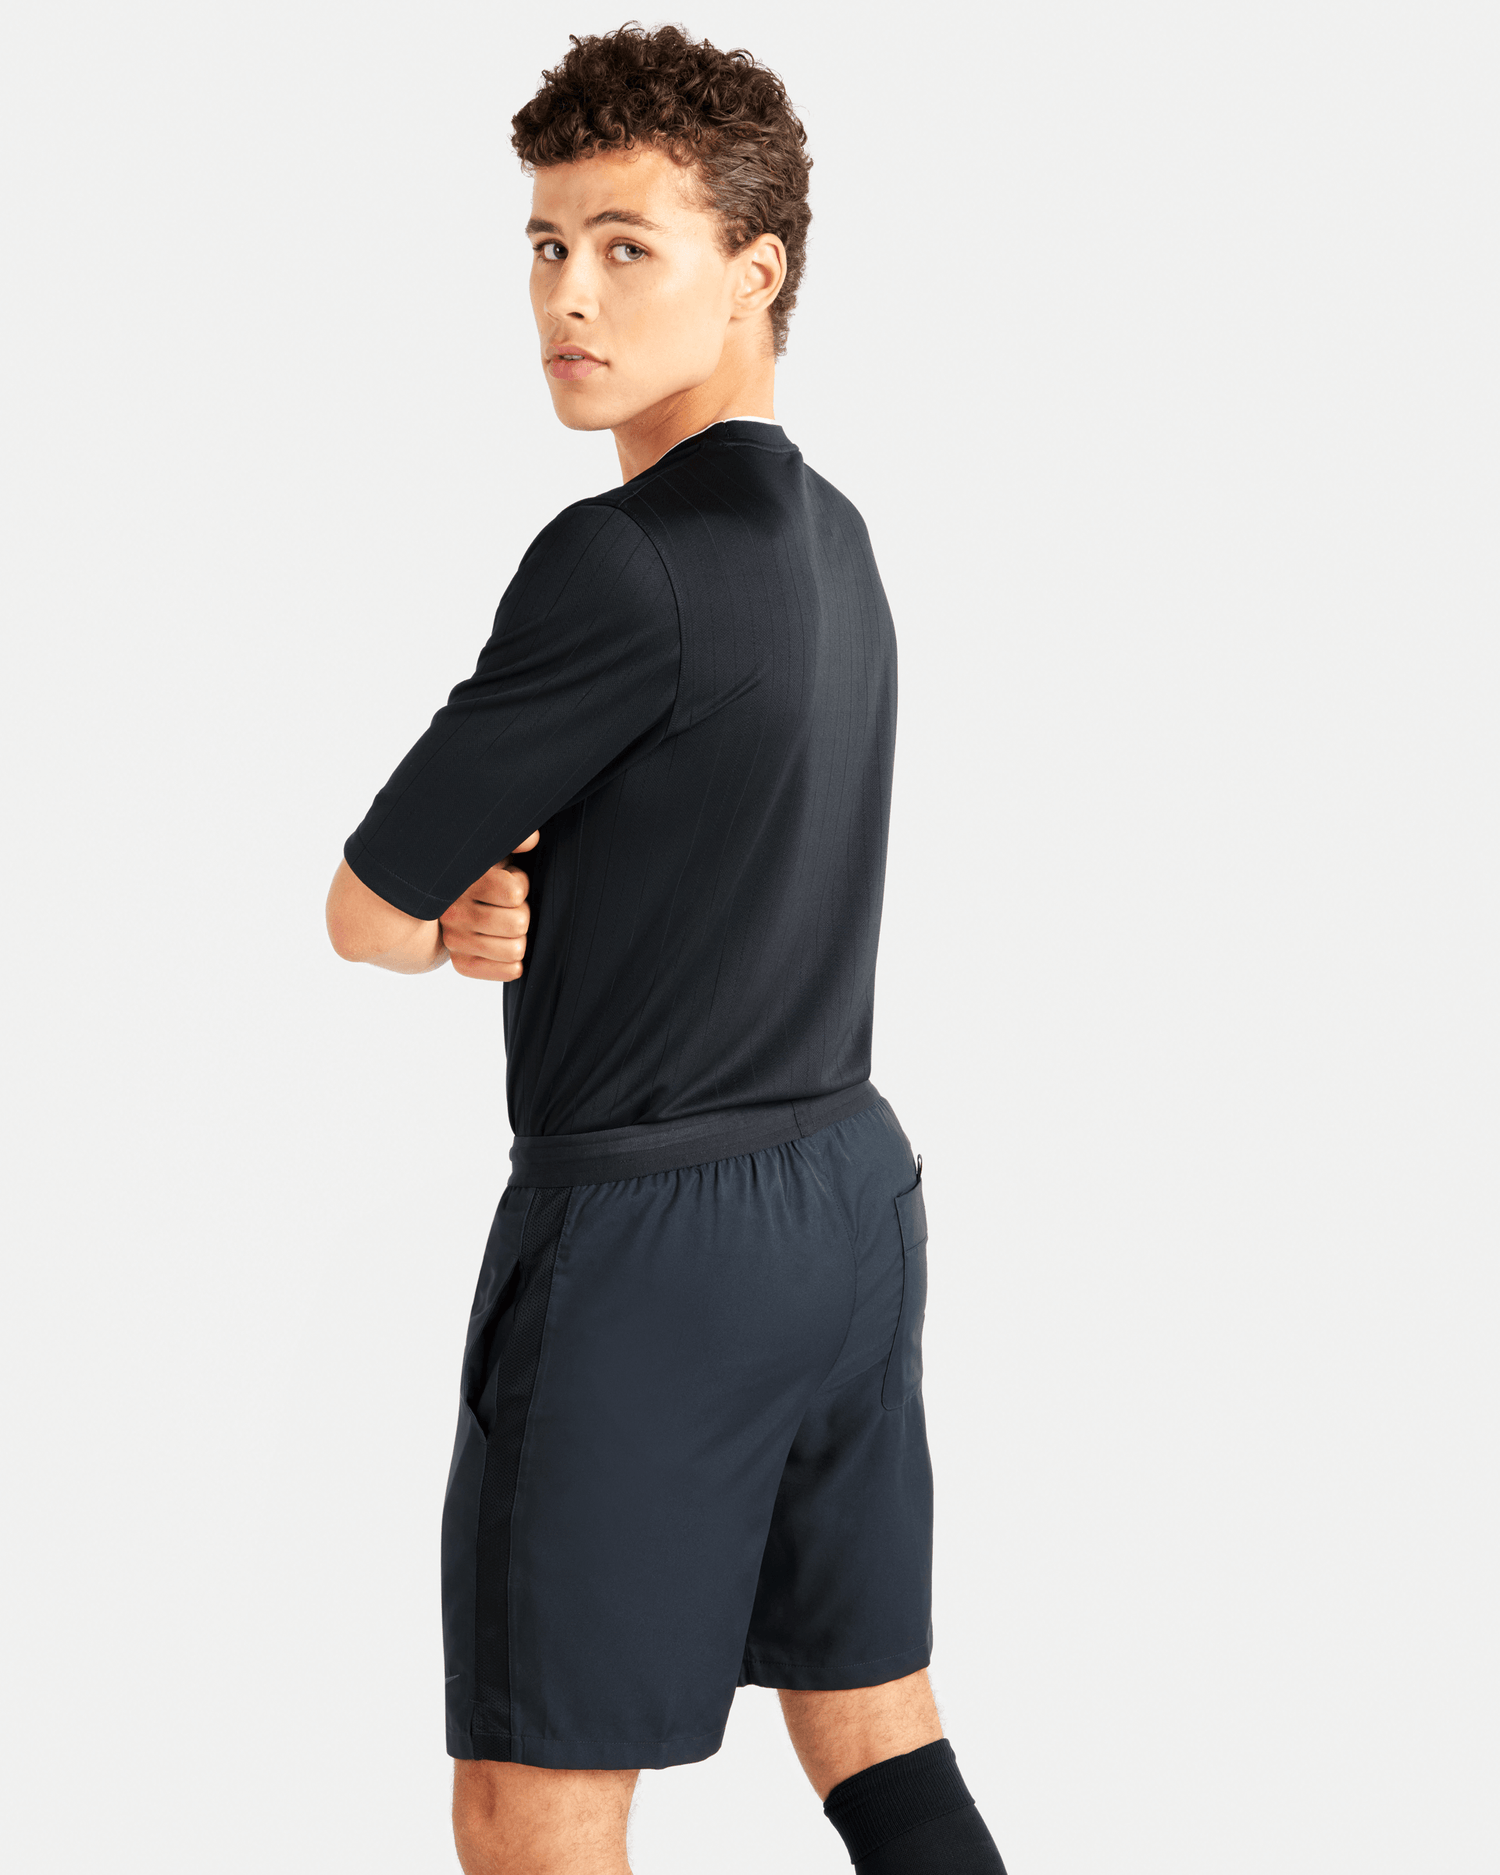 Nike Dri-Fit Referee Shorts (Model - Back)